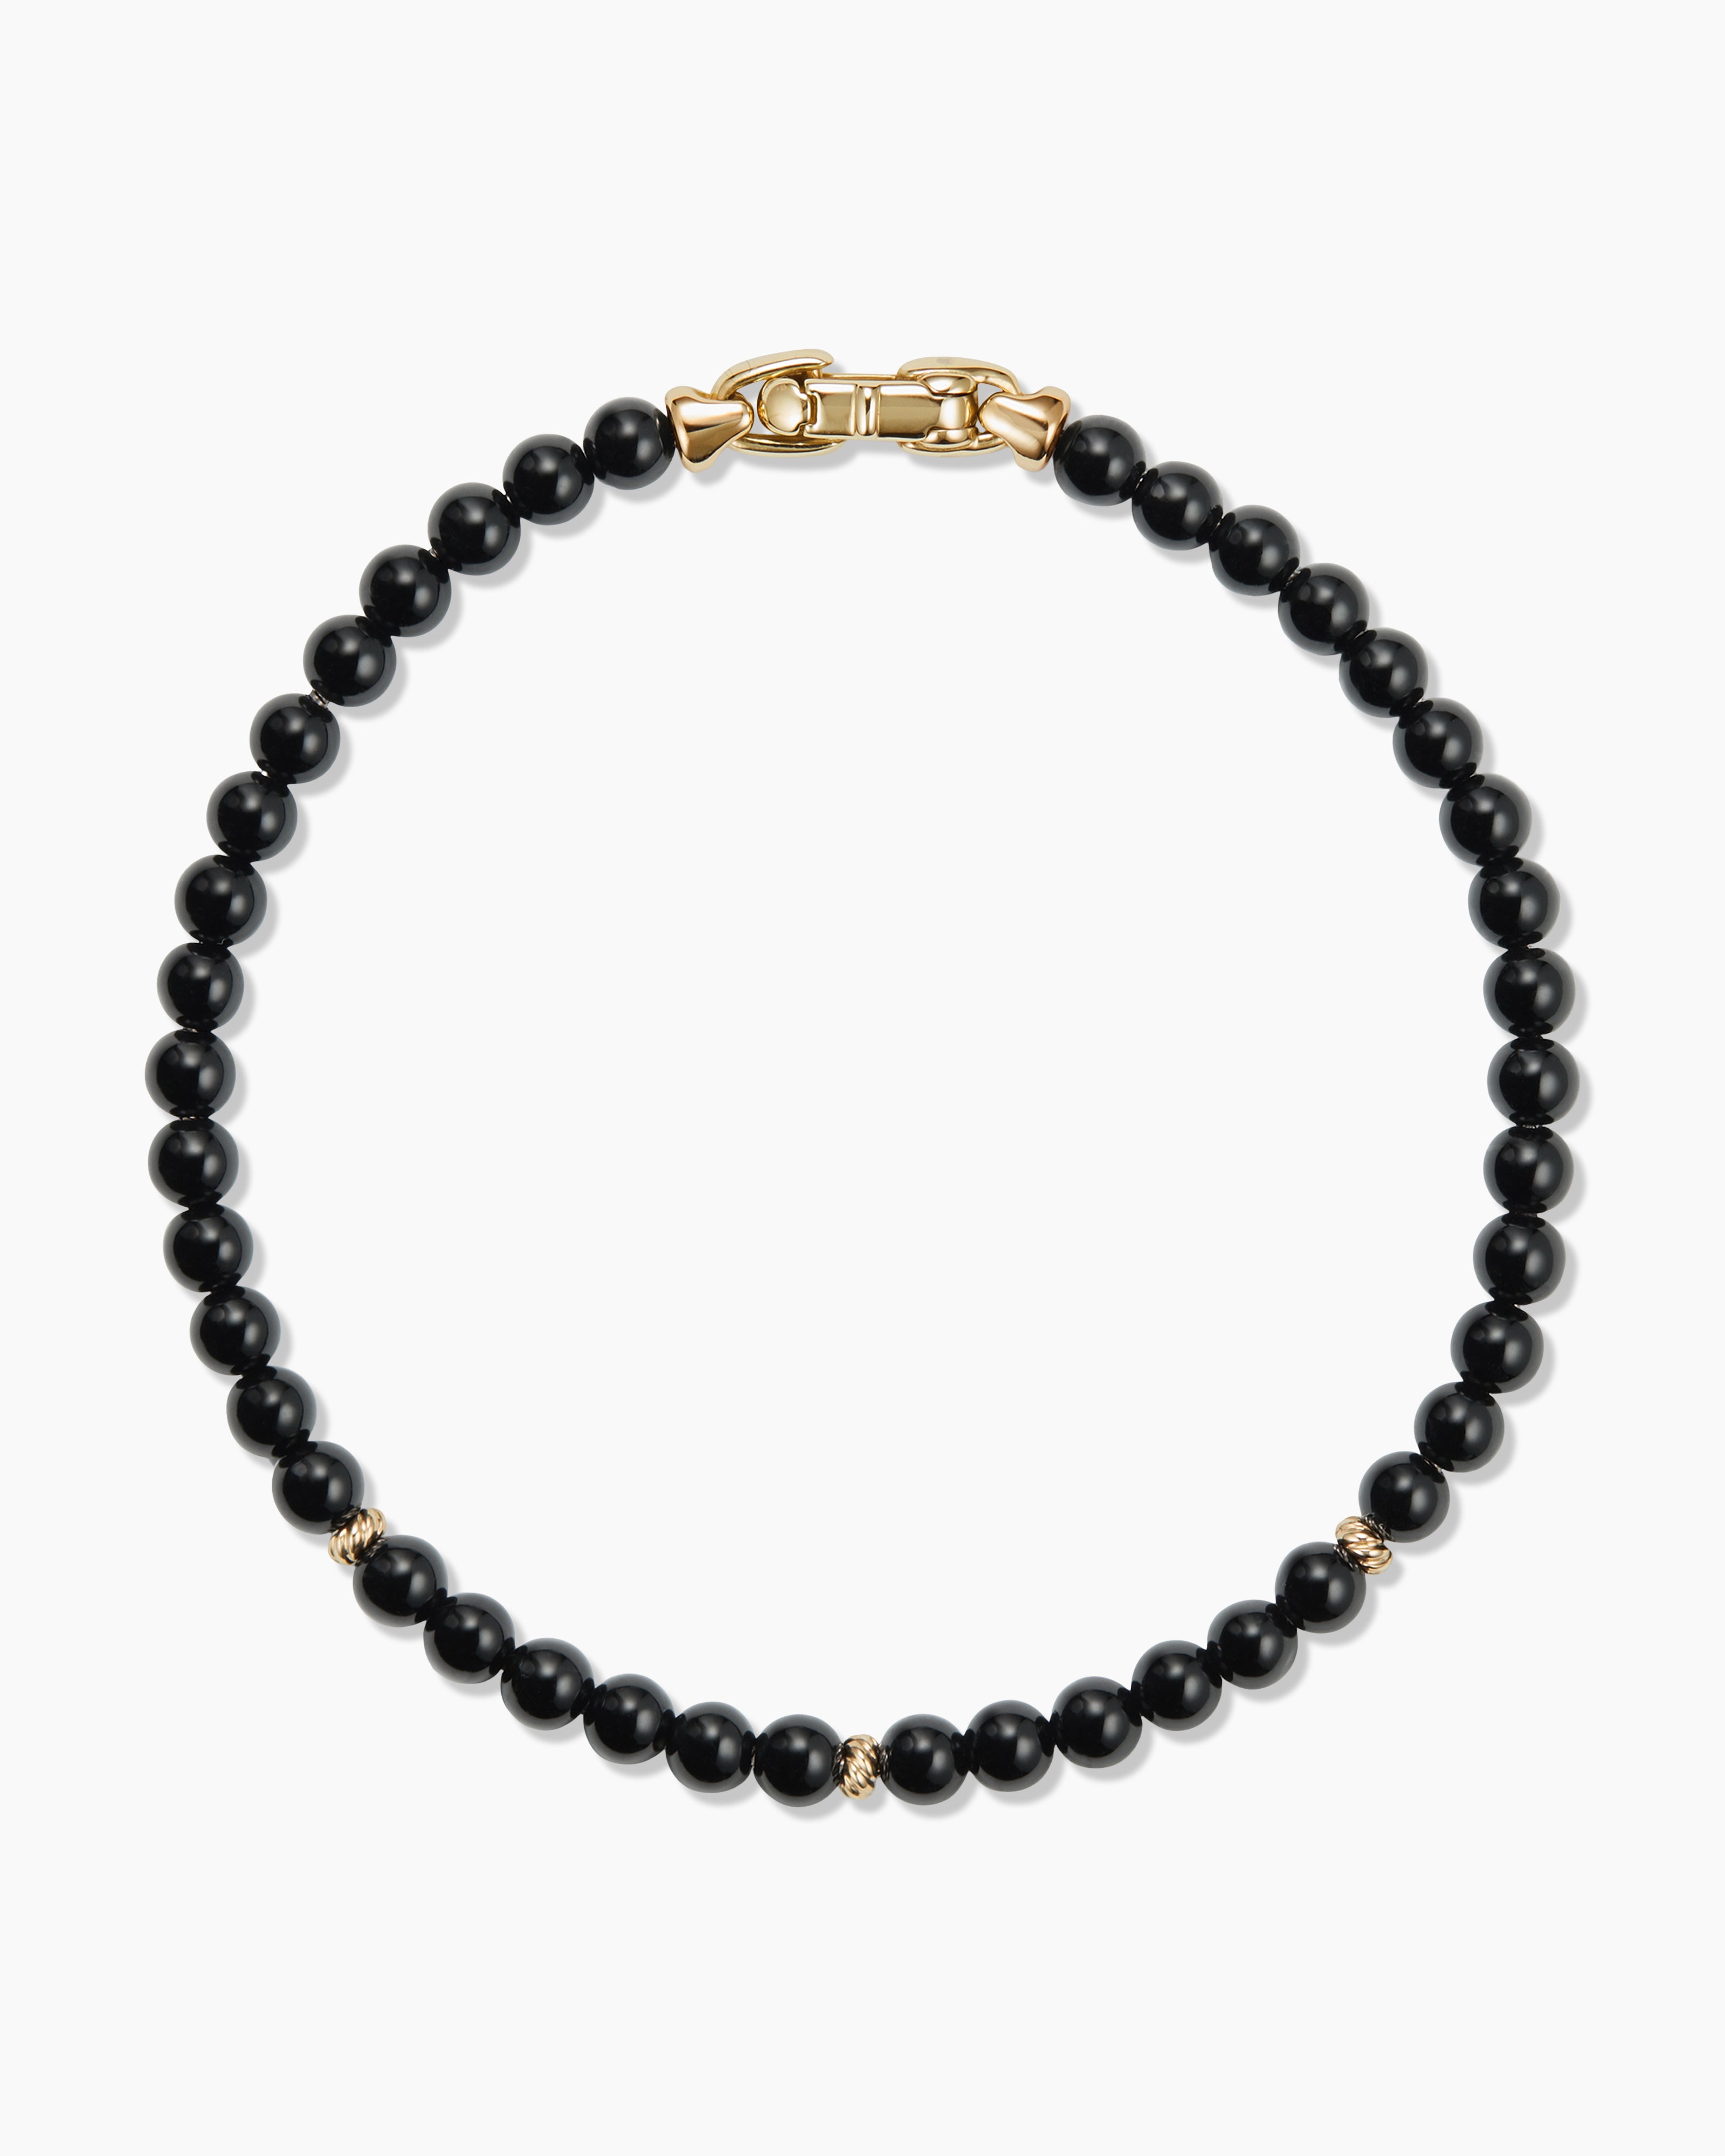 Black n Gold 13 piece Bracelet Set: 6 Gold Filled Bracelets and 7 Delica  Bead Bracelet Set in Jet Black - Fuession Jewelry